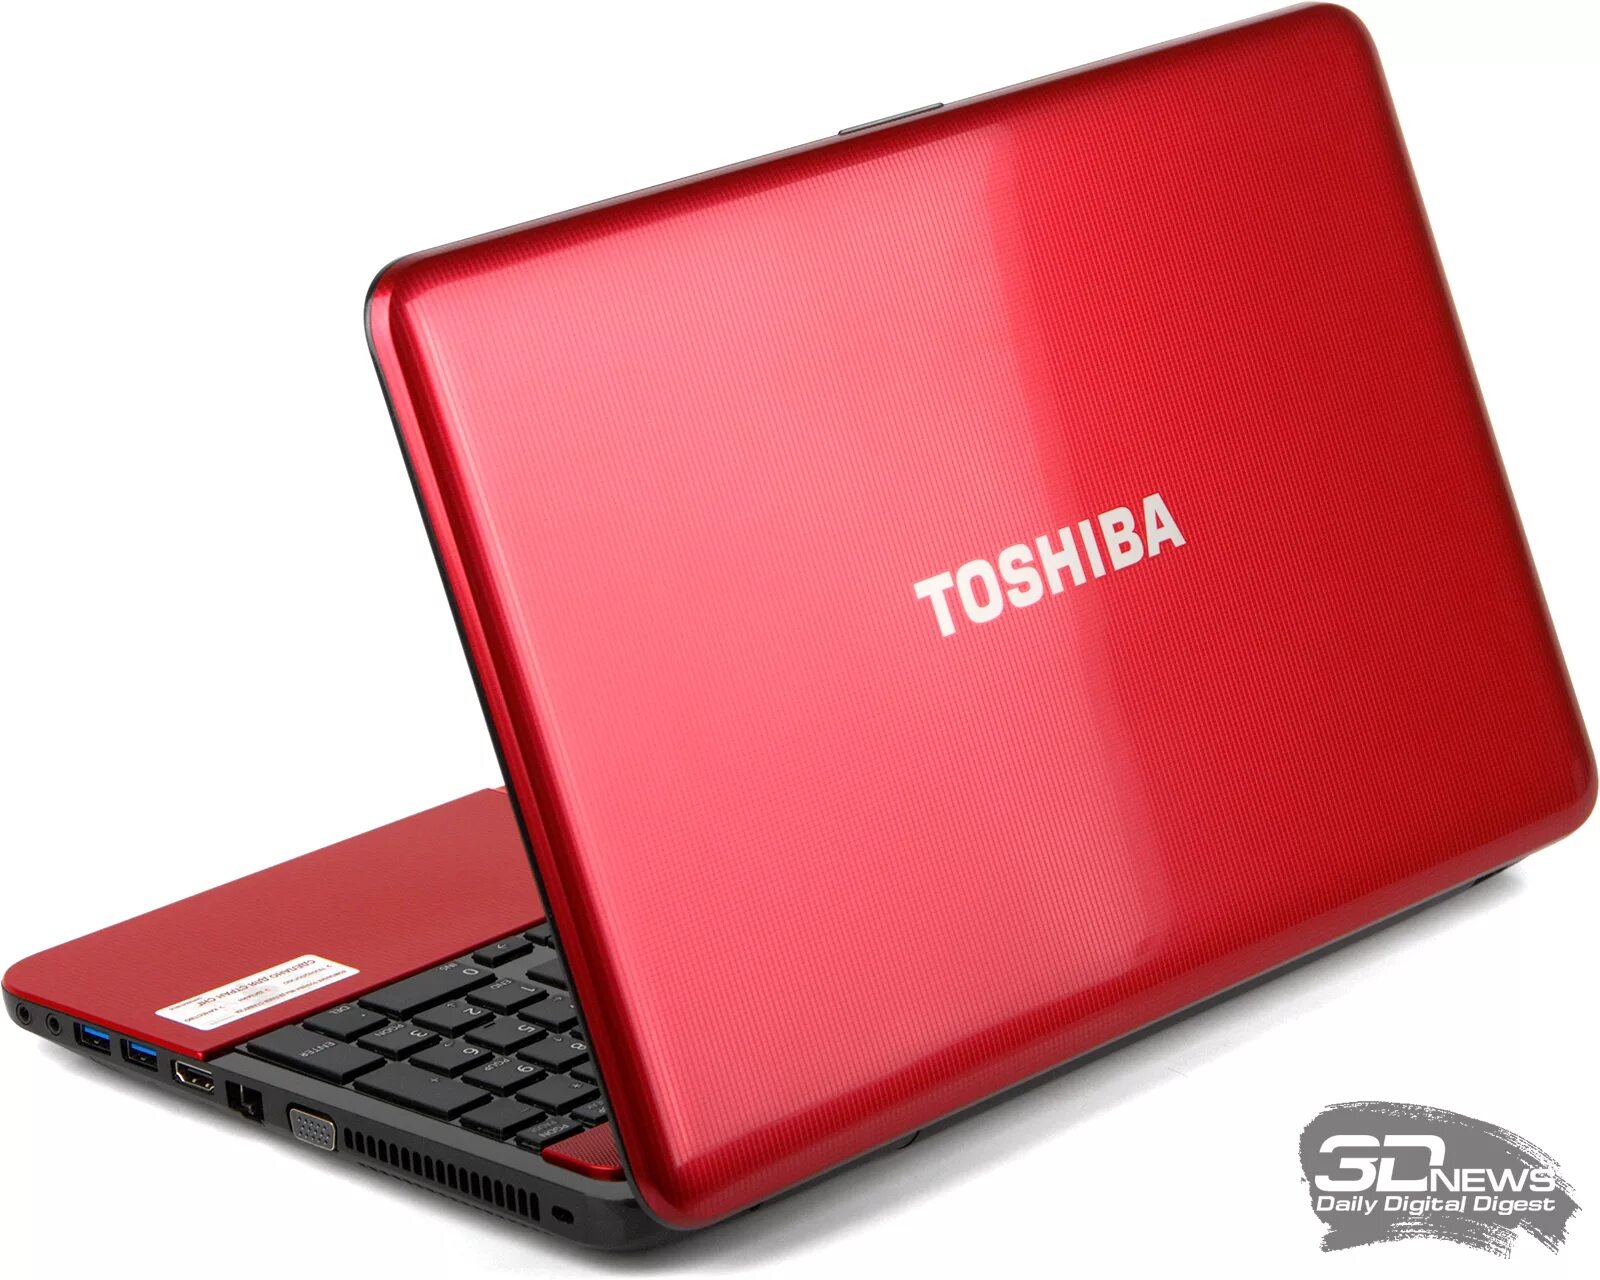 Тошиба 850 Satellite. Ноутбук Toshiba Satellite l750. Toshiba Satellite l850. Красный ноутбук Тошиба r 850. Купить ноутбук в краснодаре недорого